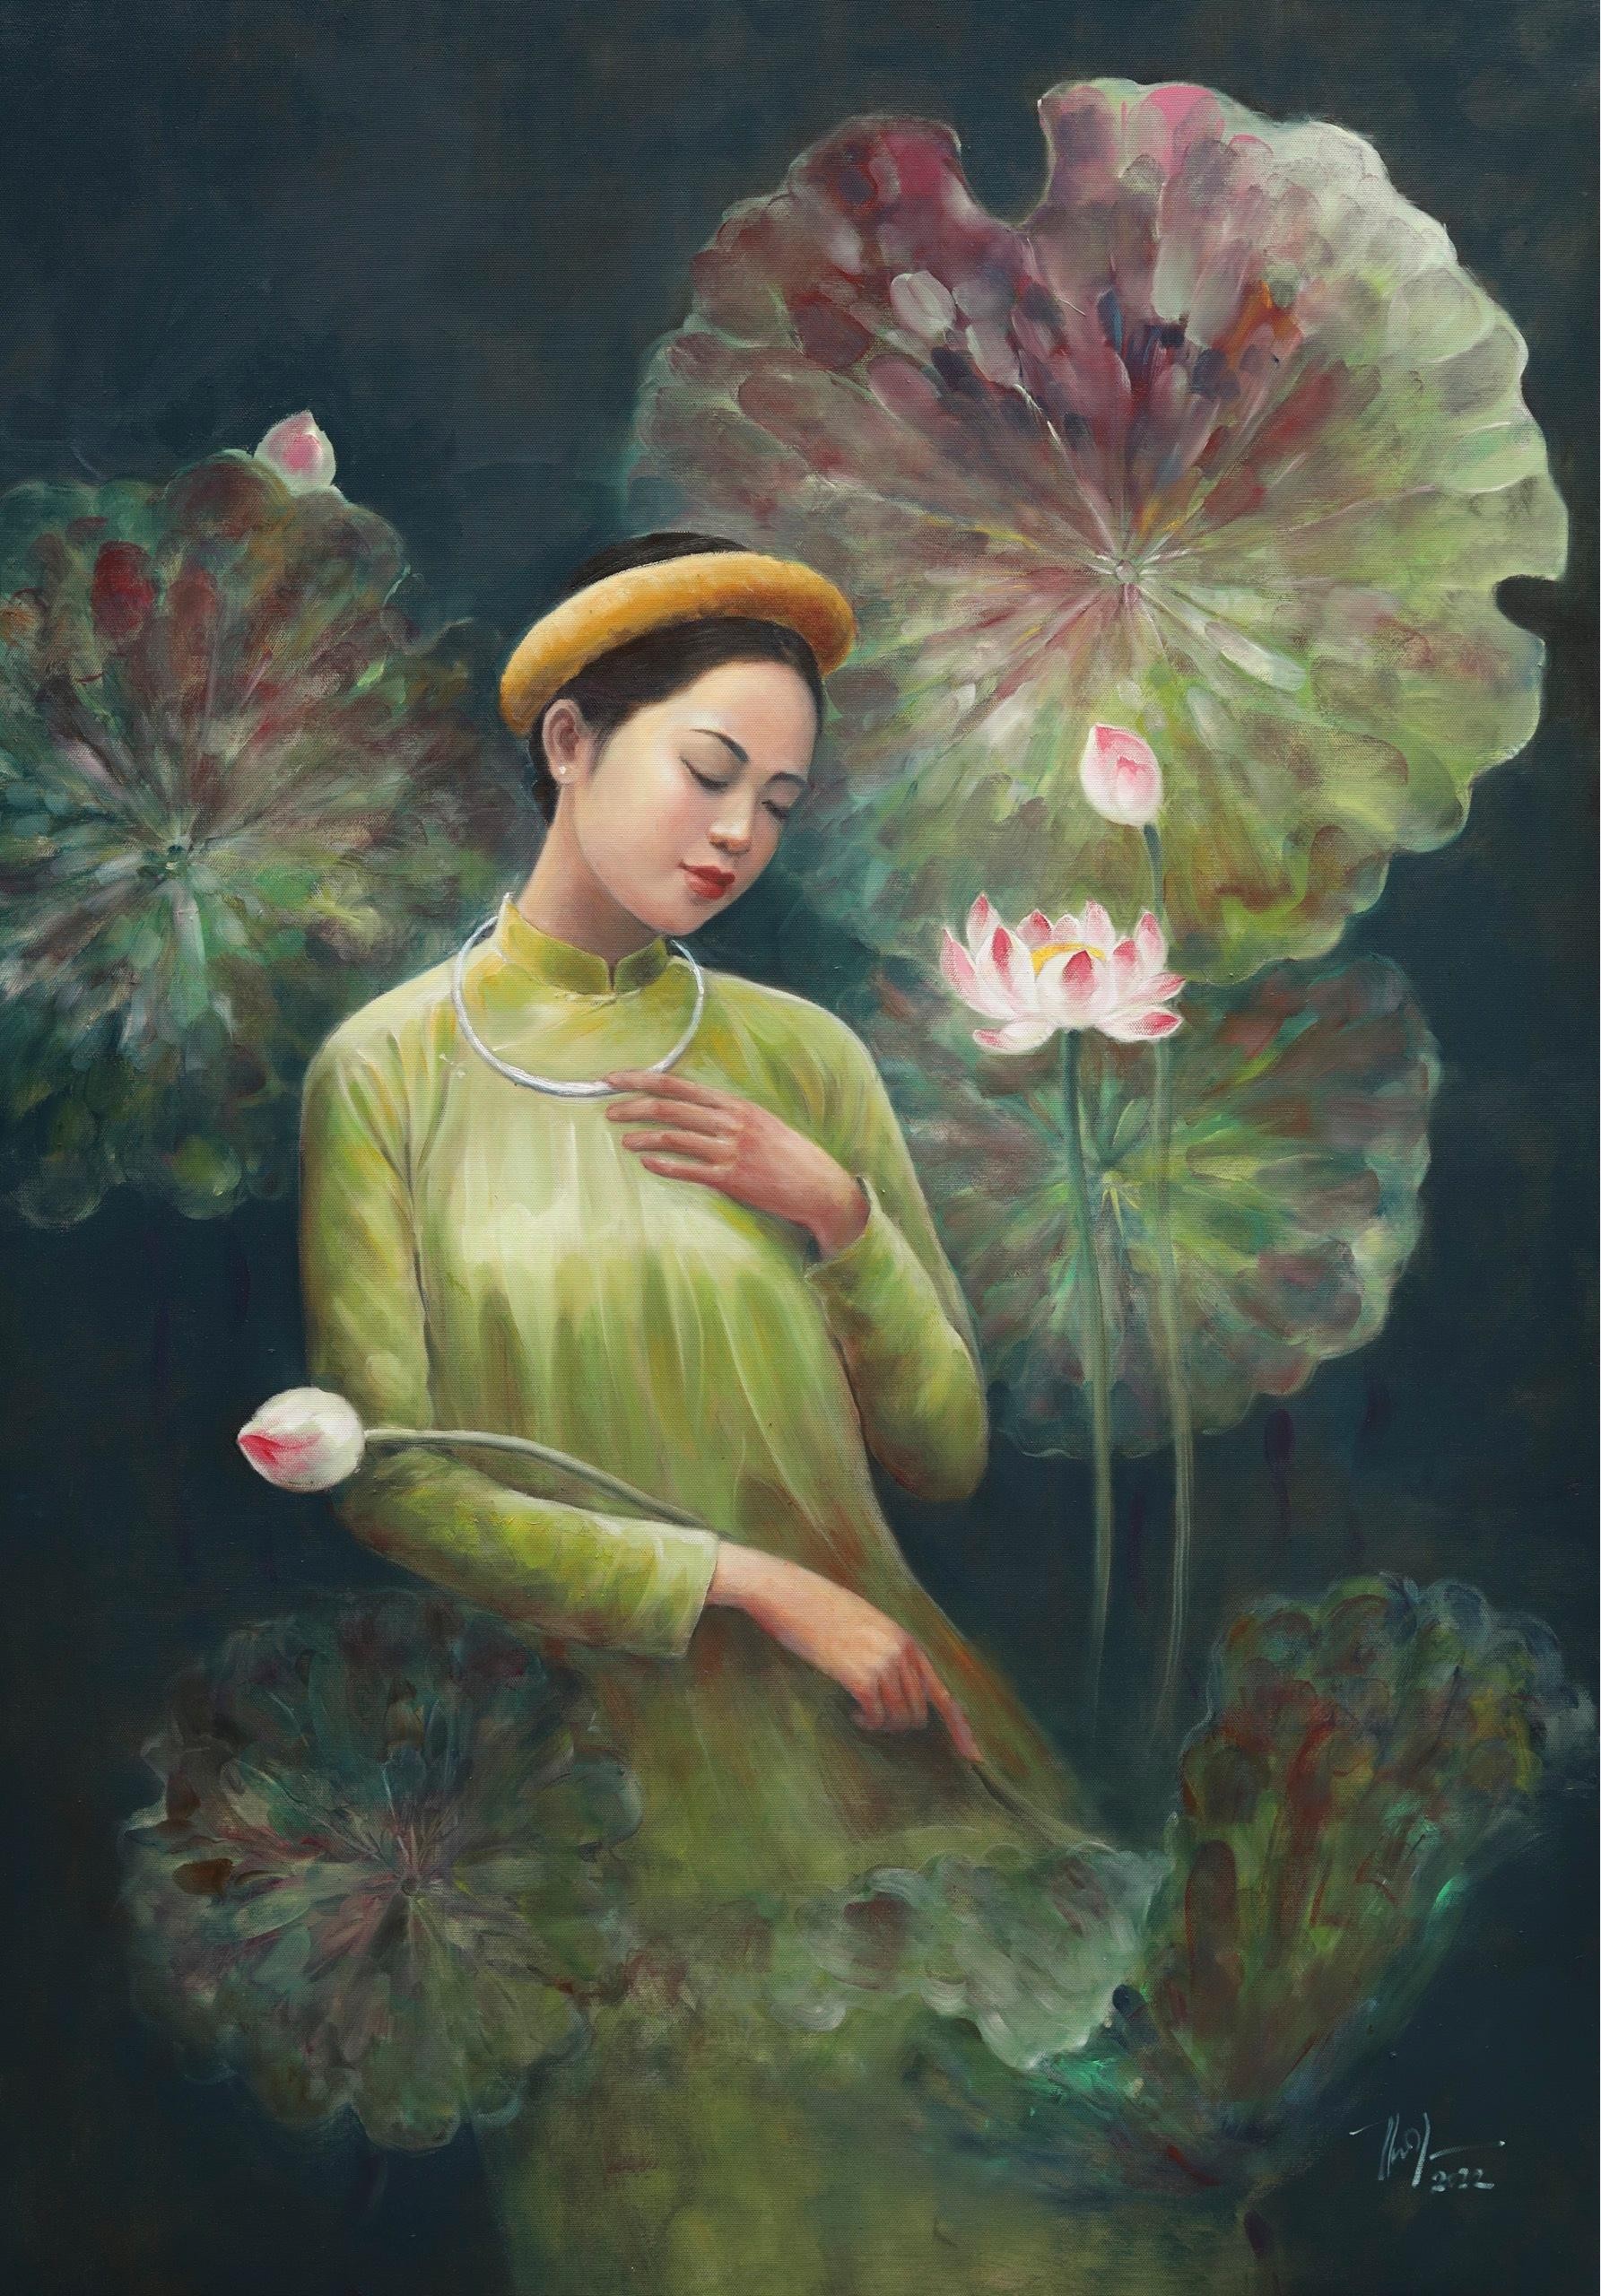 Bộ tranh thiếu nữ và hoa sen làm mê đắm lòng người của chàng họa sĩ Bắc Giang ảnh 5